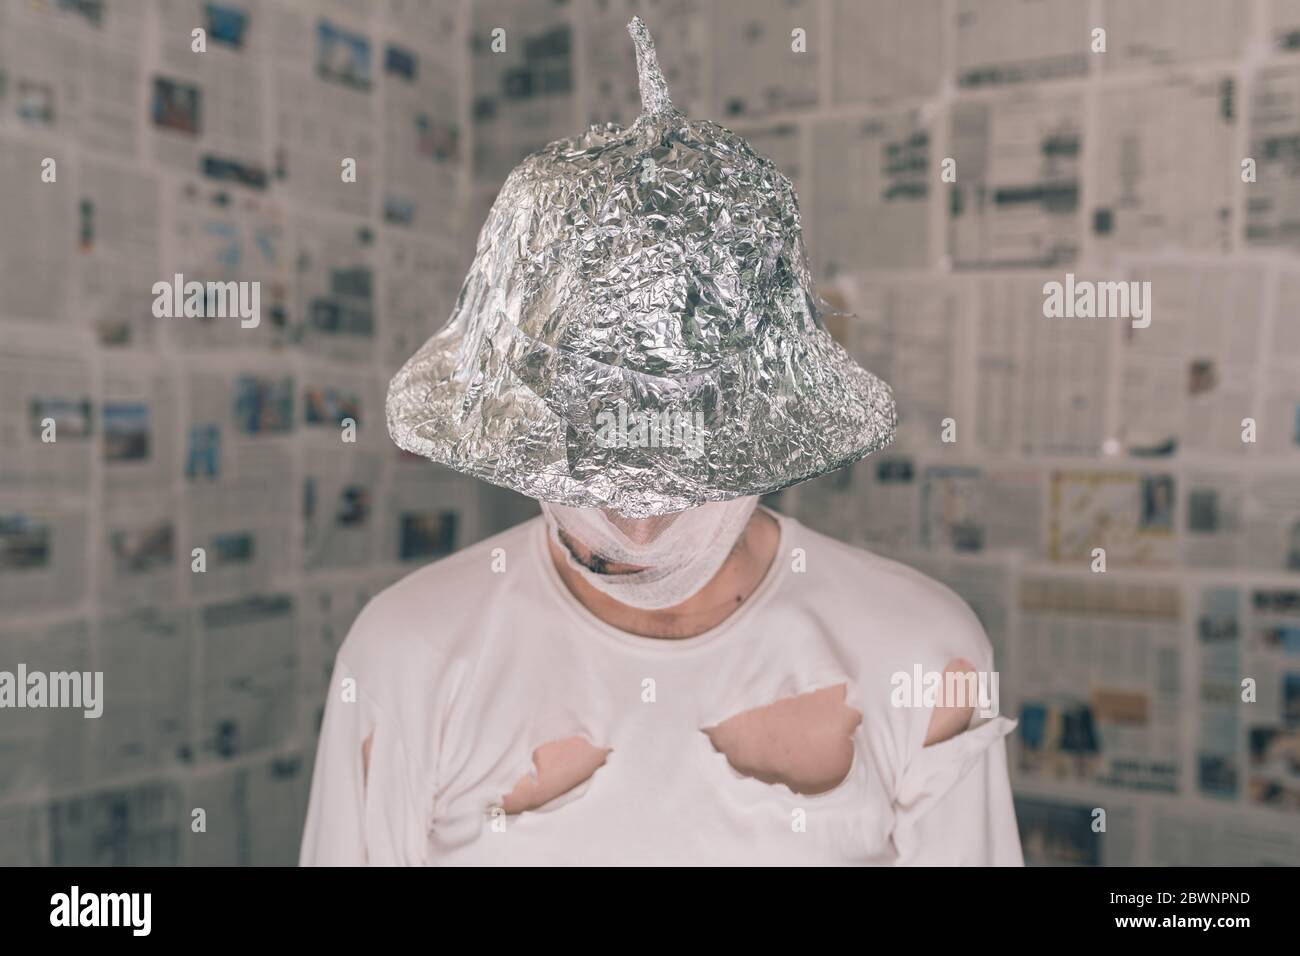 Teoria Del Cappello Di Stagnola Immagini e Fotos Stock - Alamy